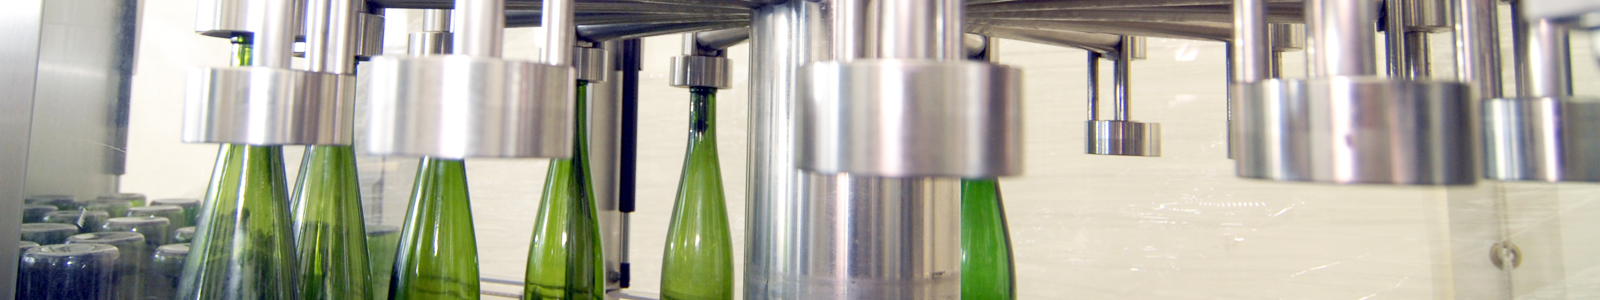 Automatische Weinflaschenabfüllanlage ©DLR